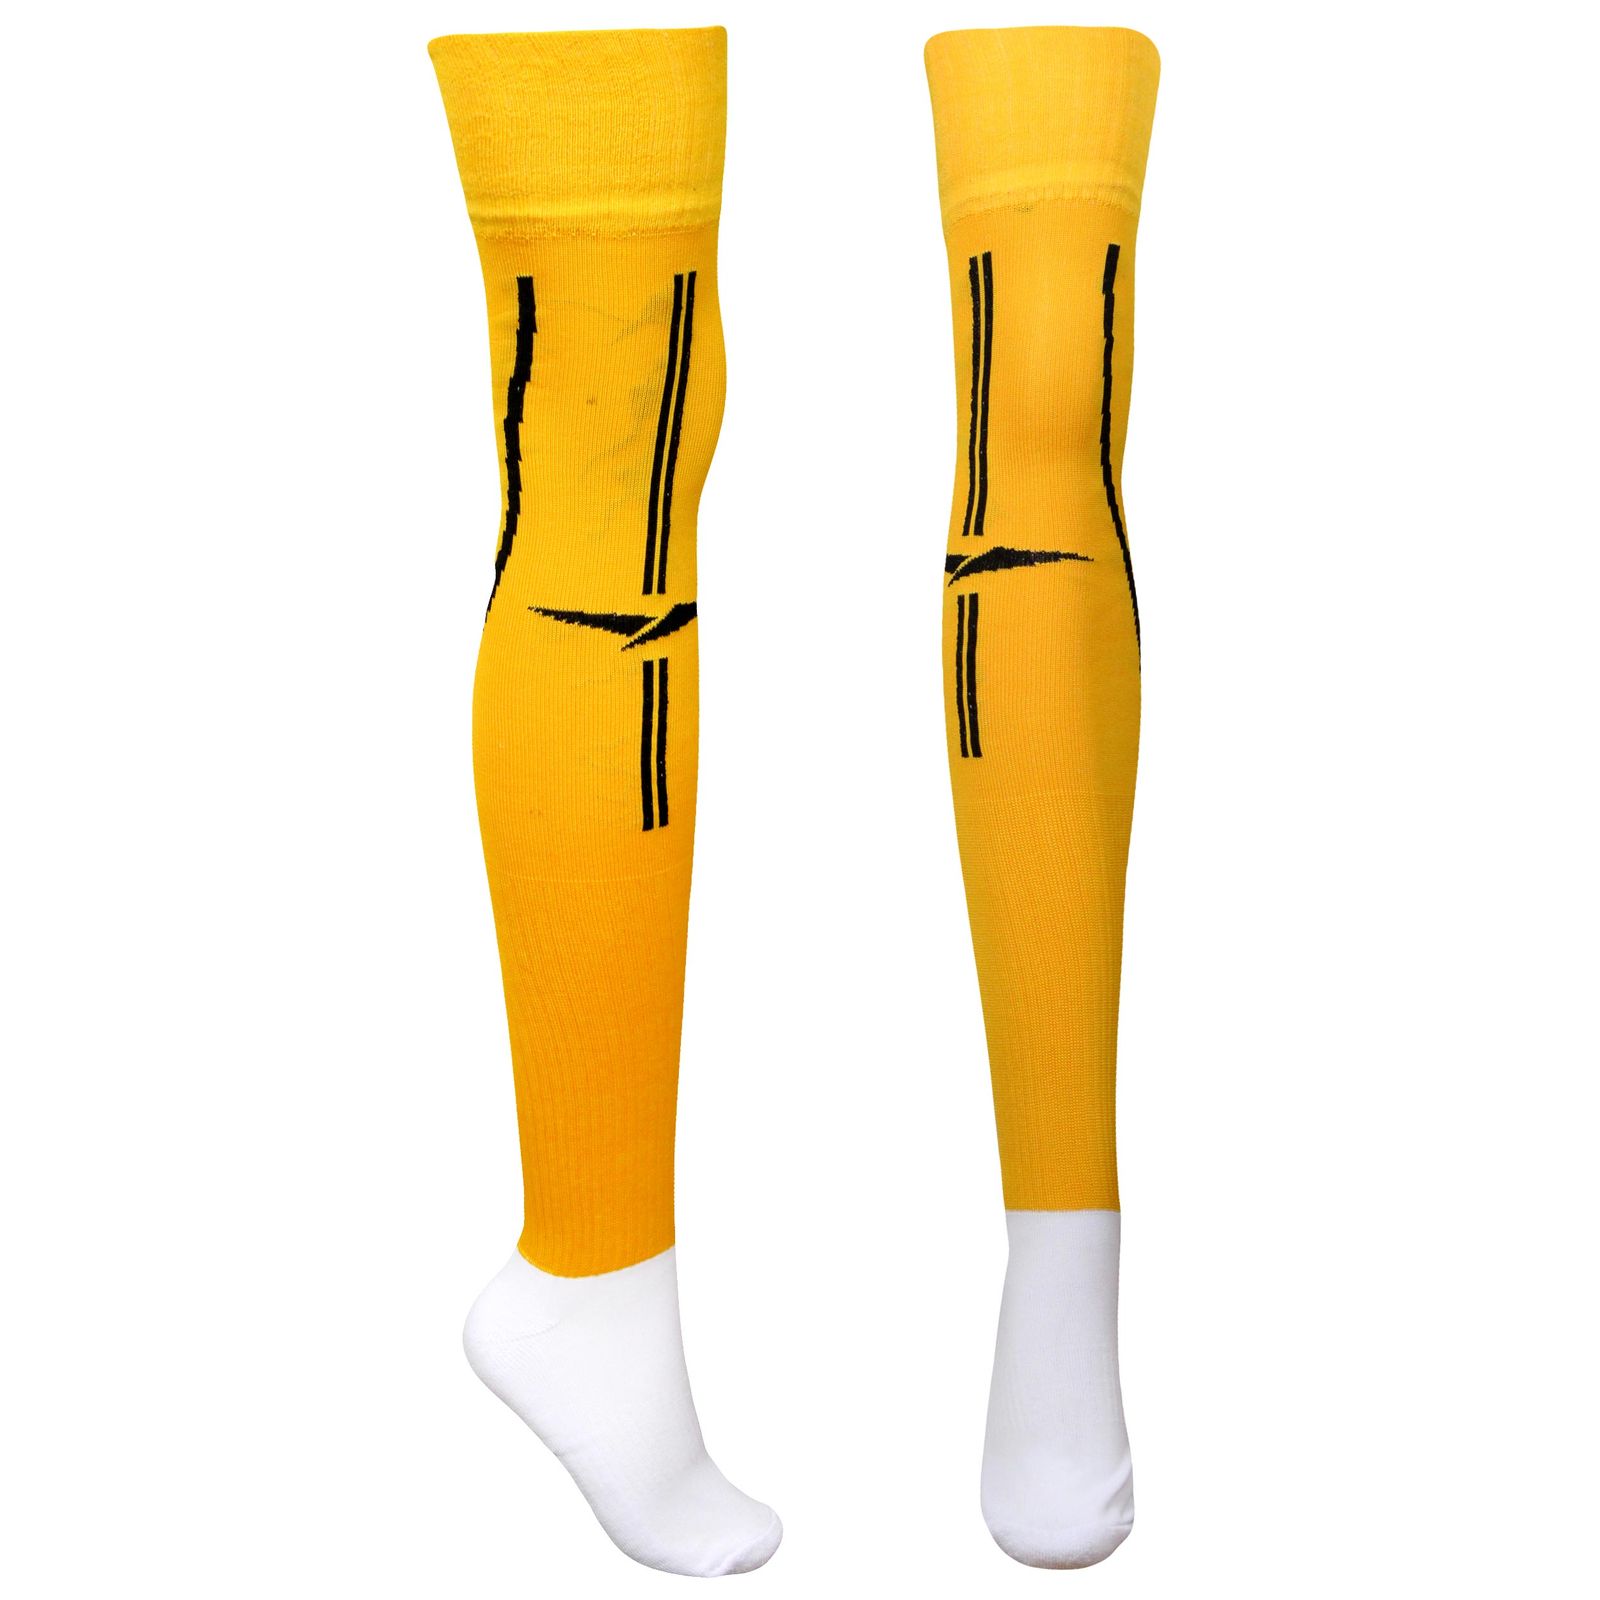 جوراب ورزشی ساق بلند مردانه ماییلدا مدل کف حوله ای کد 4187 رنگ زرد -  - 1